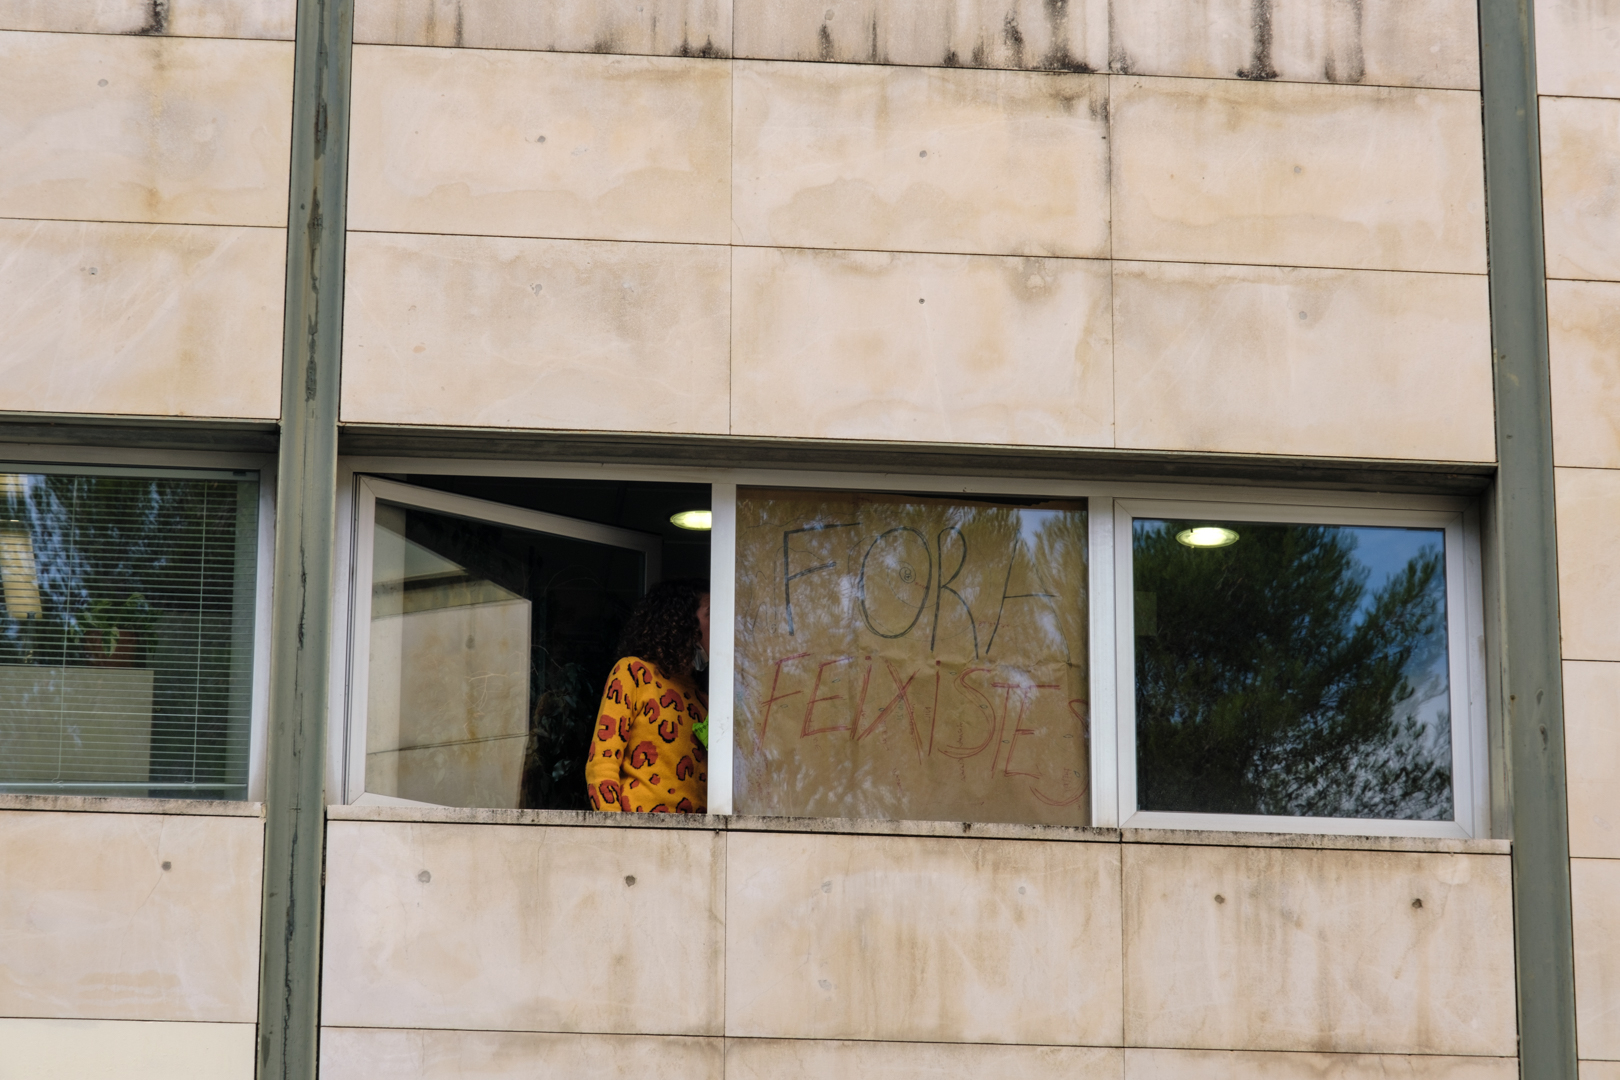 Un cartell diu “Fora Feixistes” des d'una finestra de l'edifici Àgora